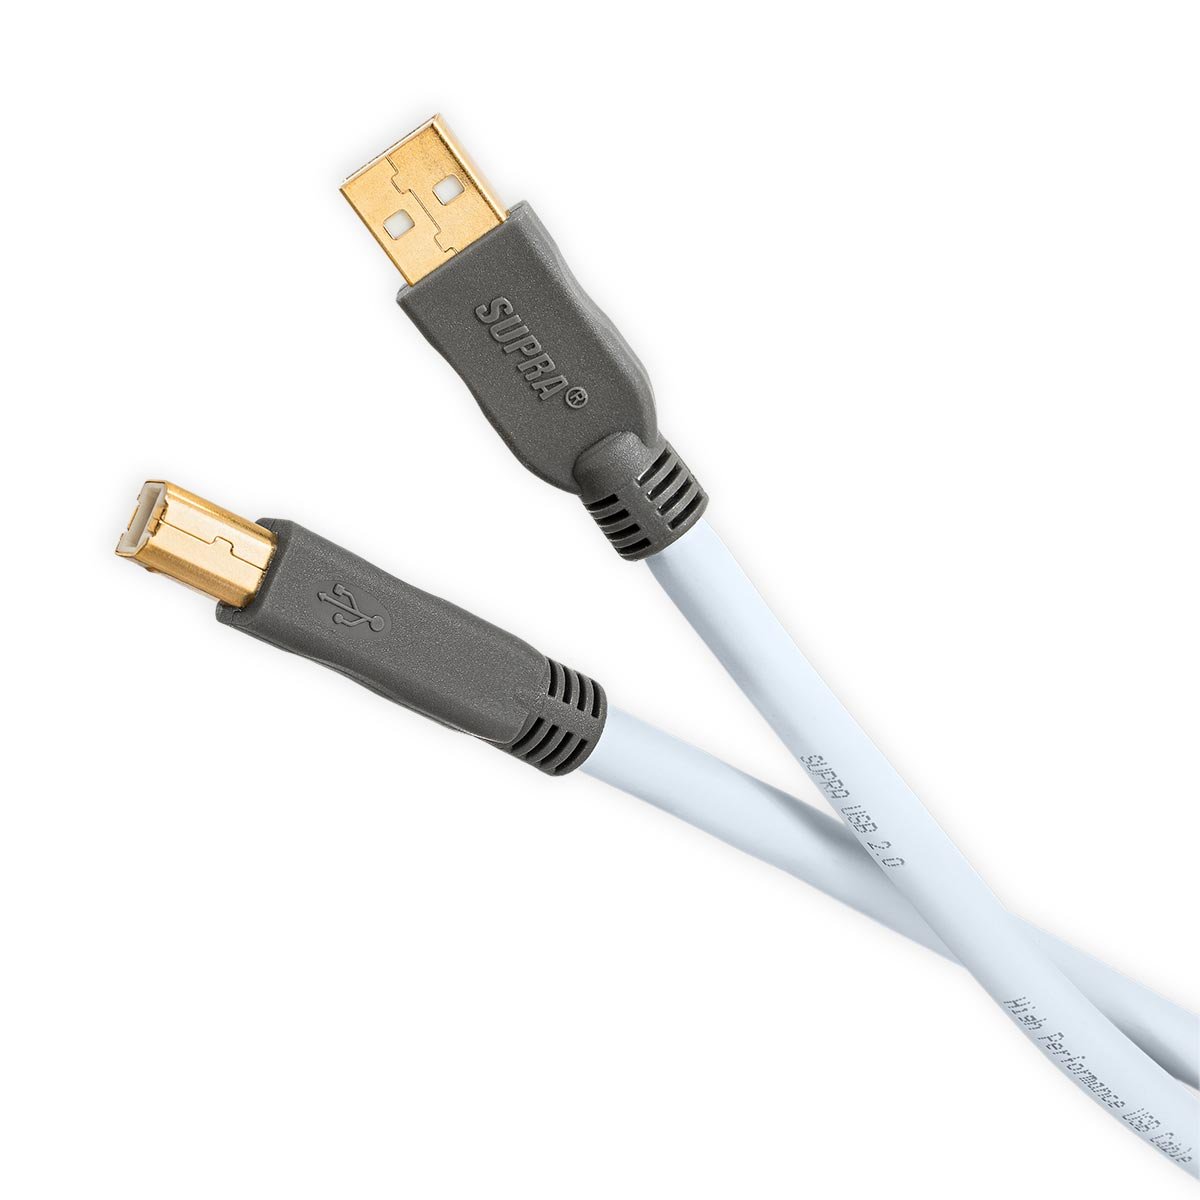 Supra USB kabel